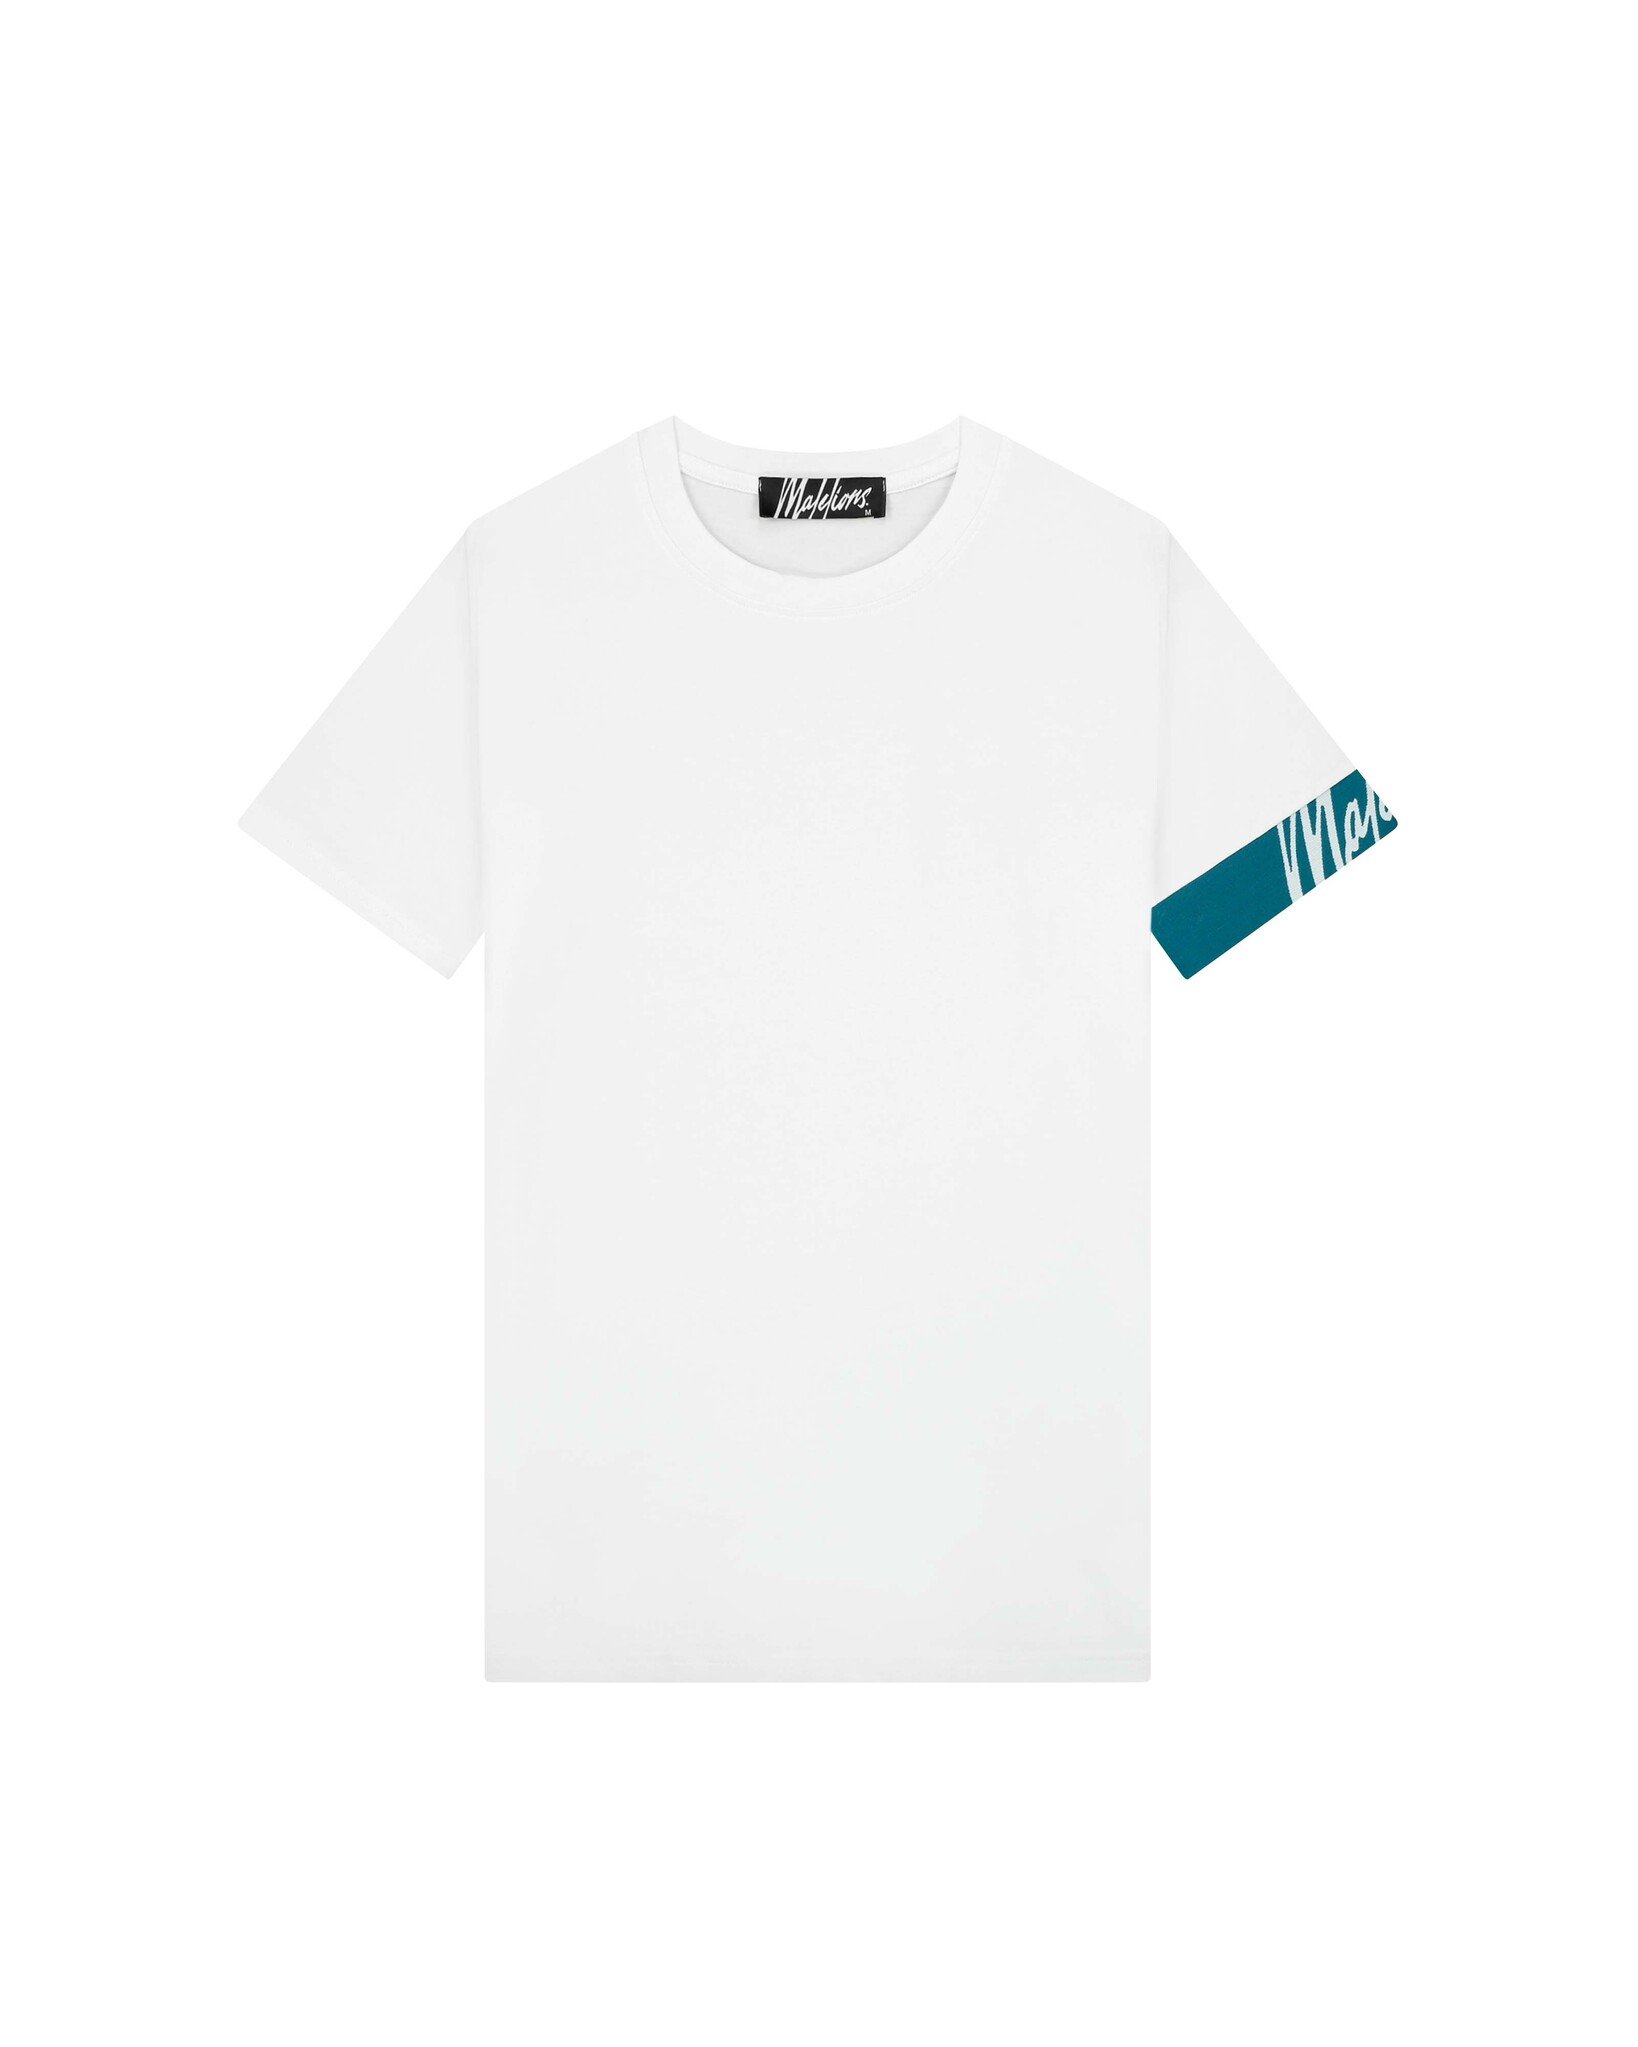 Malelions Men Captain T-Shirt 2.0 - White/Teal